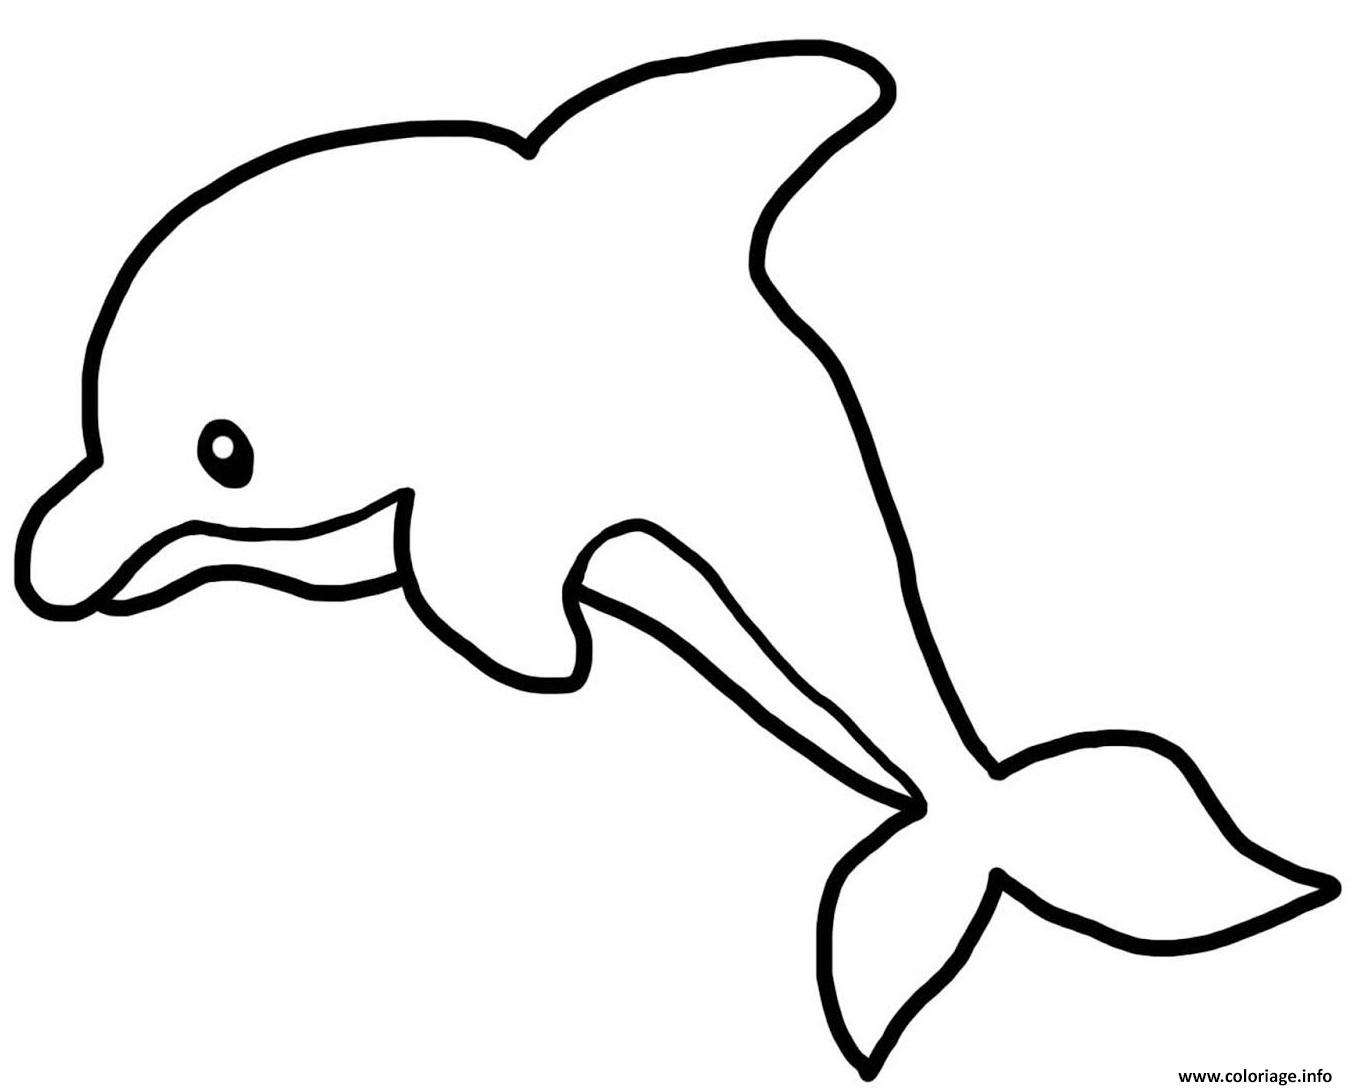 coloriage dauphin maternelle jecolorie com page de souche d&#x00027;arbre en ligne